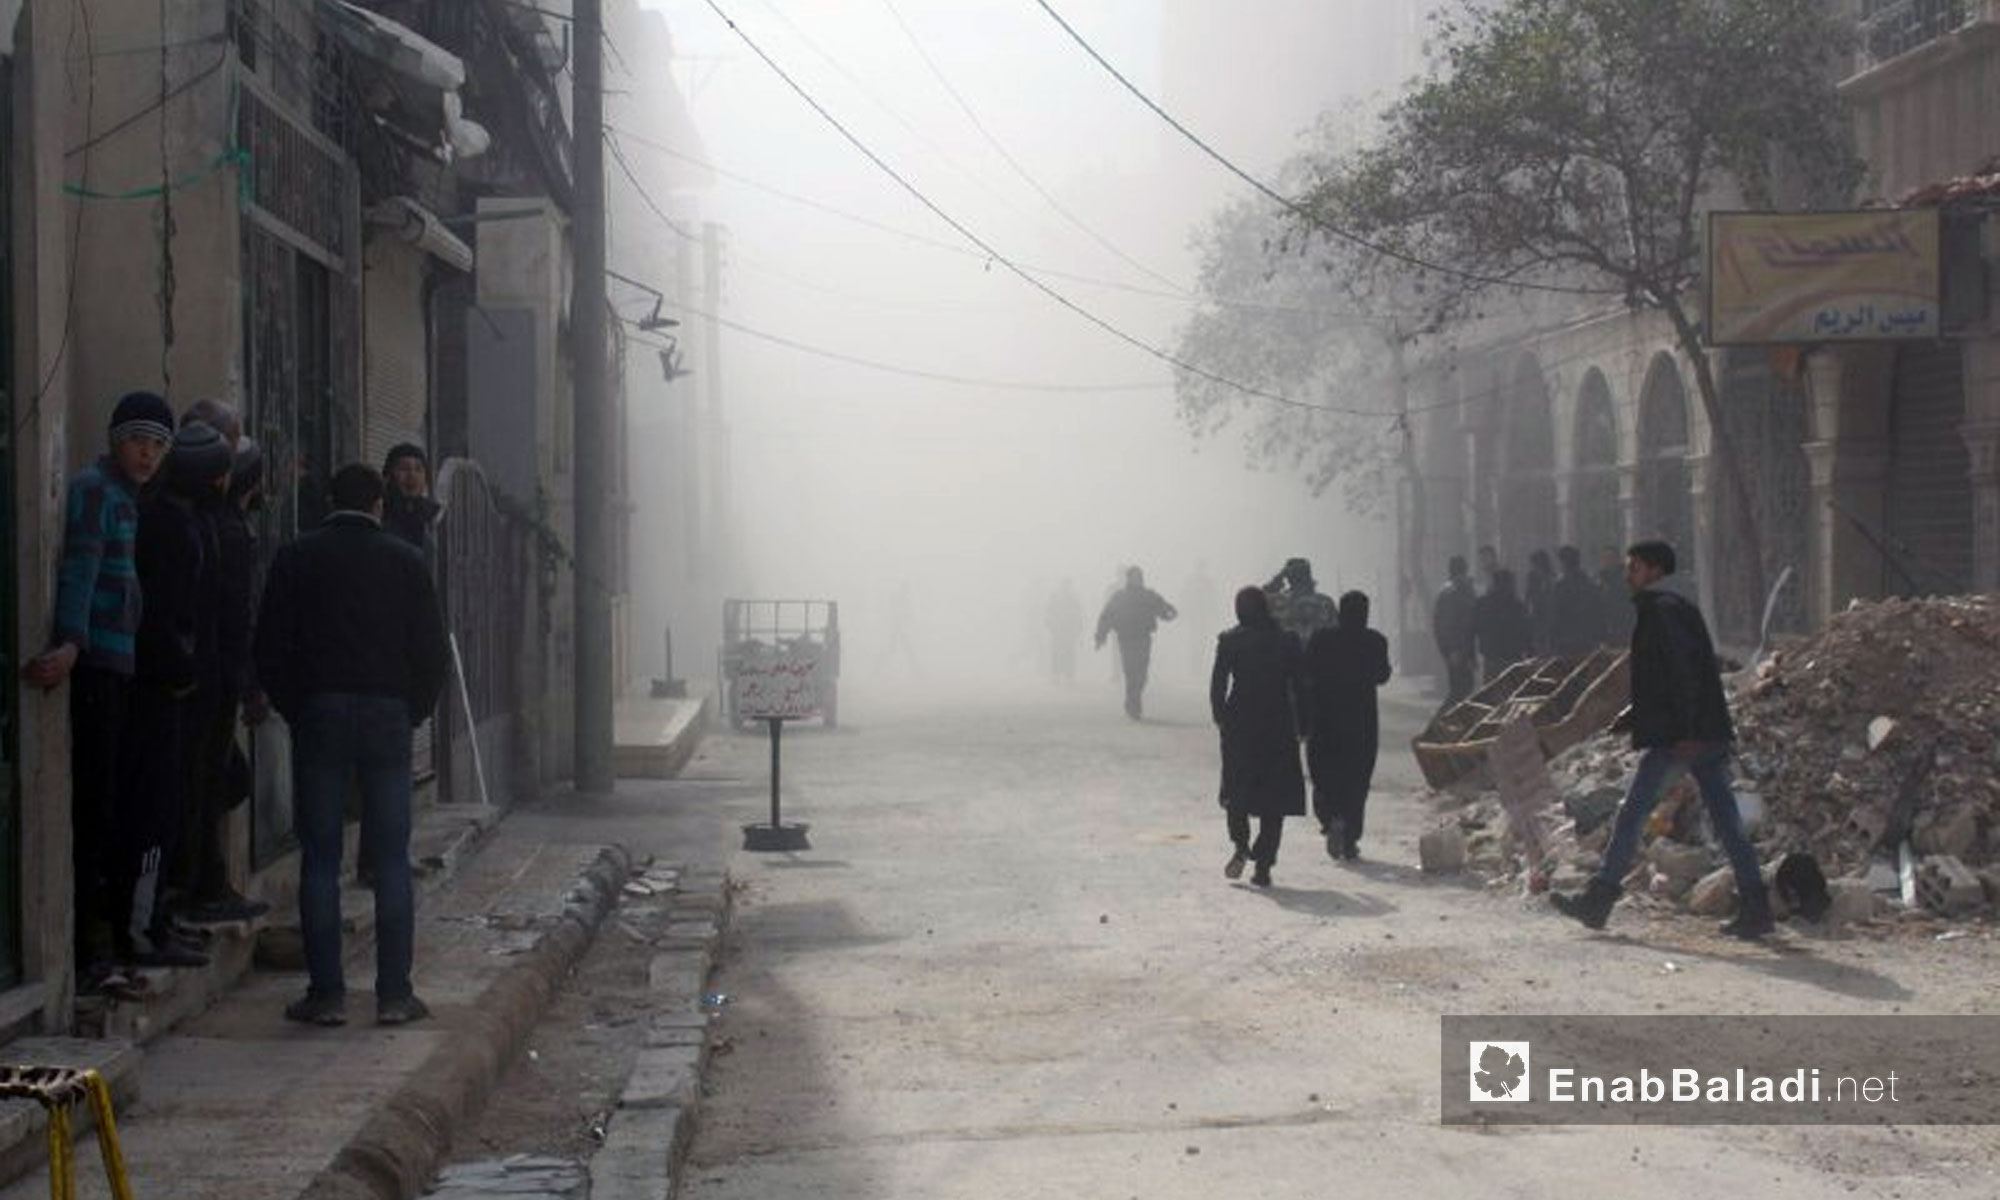 قصف بالطيران الحربي على بلدة حمورية في الغوطة الشرقية - 6 شباط 2018 (عنب بلدي)